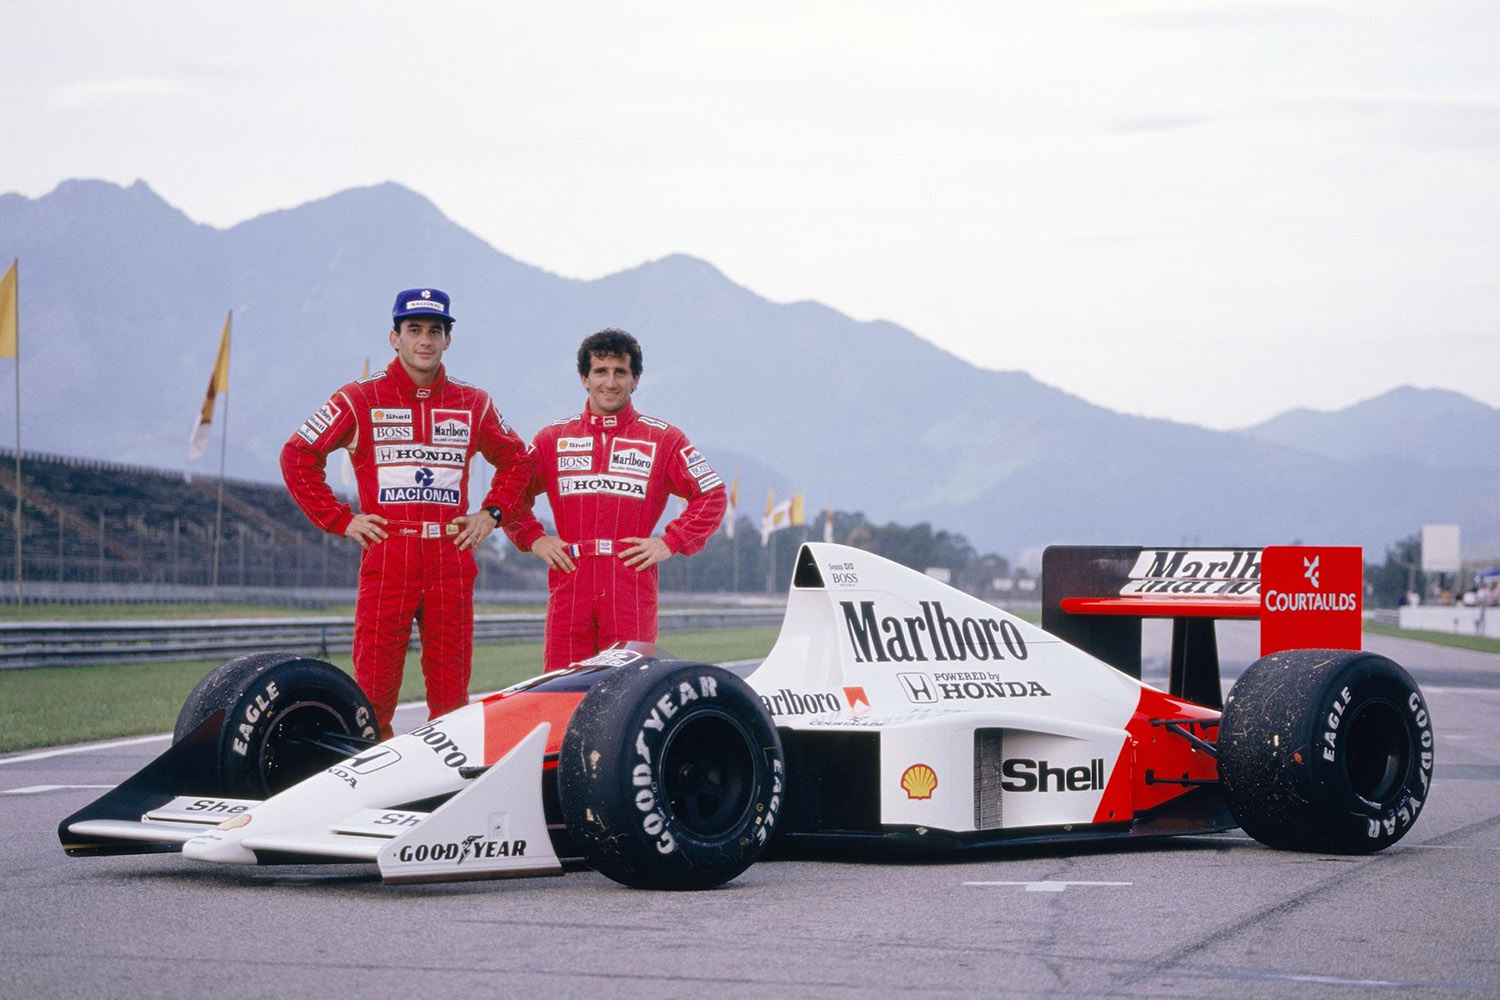 1989_Marlboro_McLaren_Honda_MP4_5_Ayrton_Senna_Alain_Prost_Brazillian_Grand_Prix_Jacarepagua